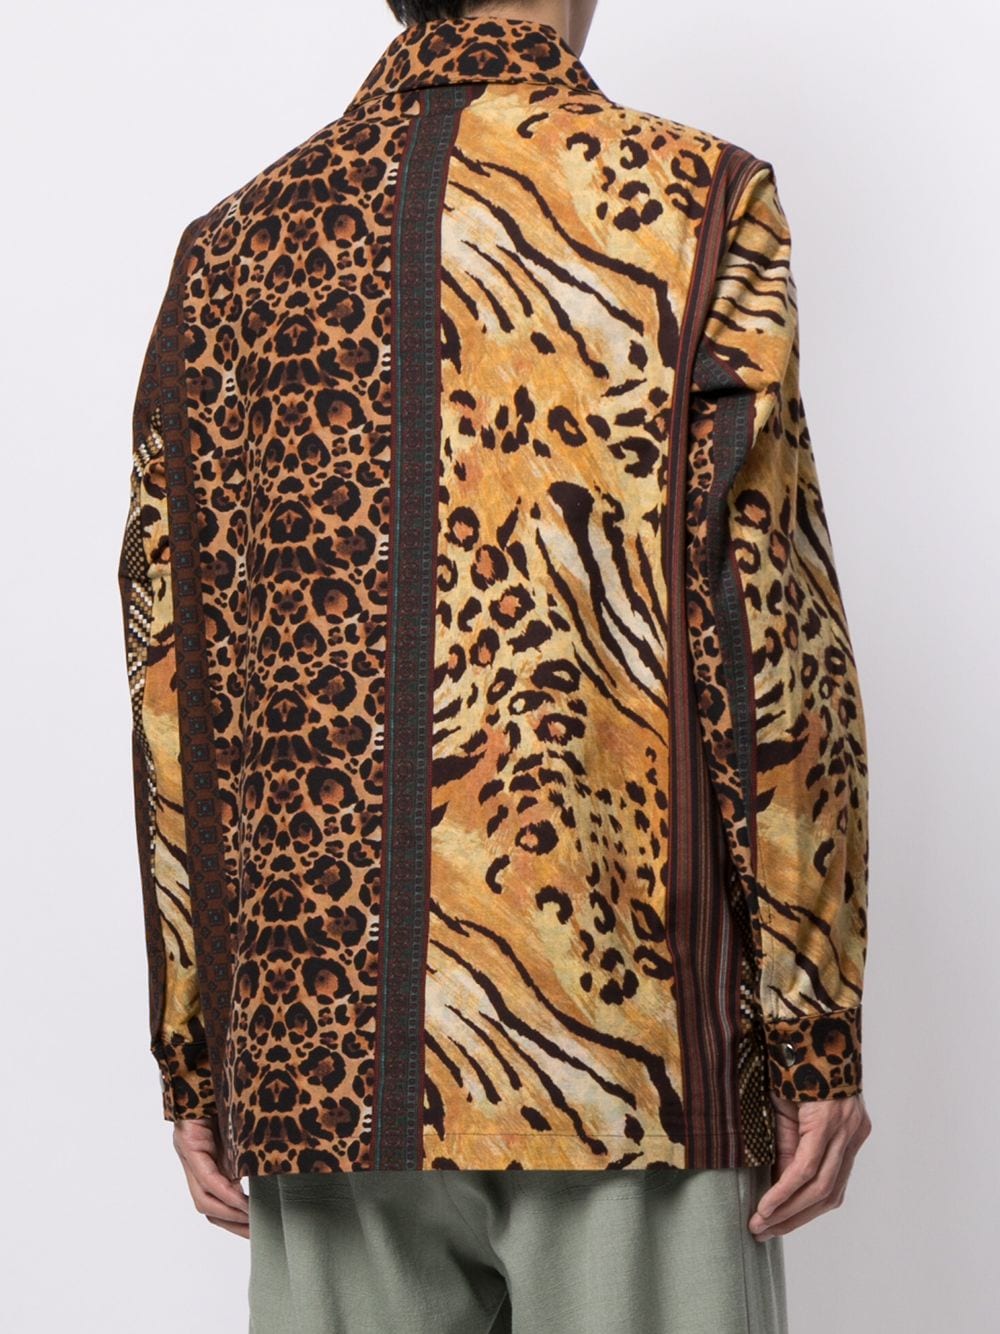 фото Pierre-louis mascia рубашка с леопардовым принтом